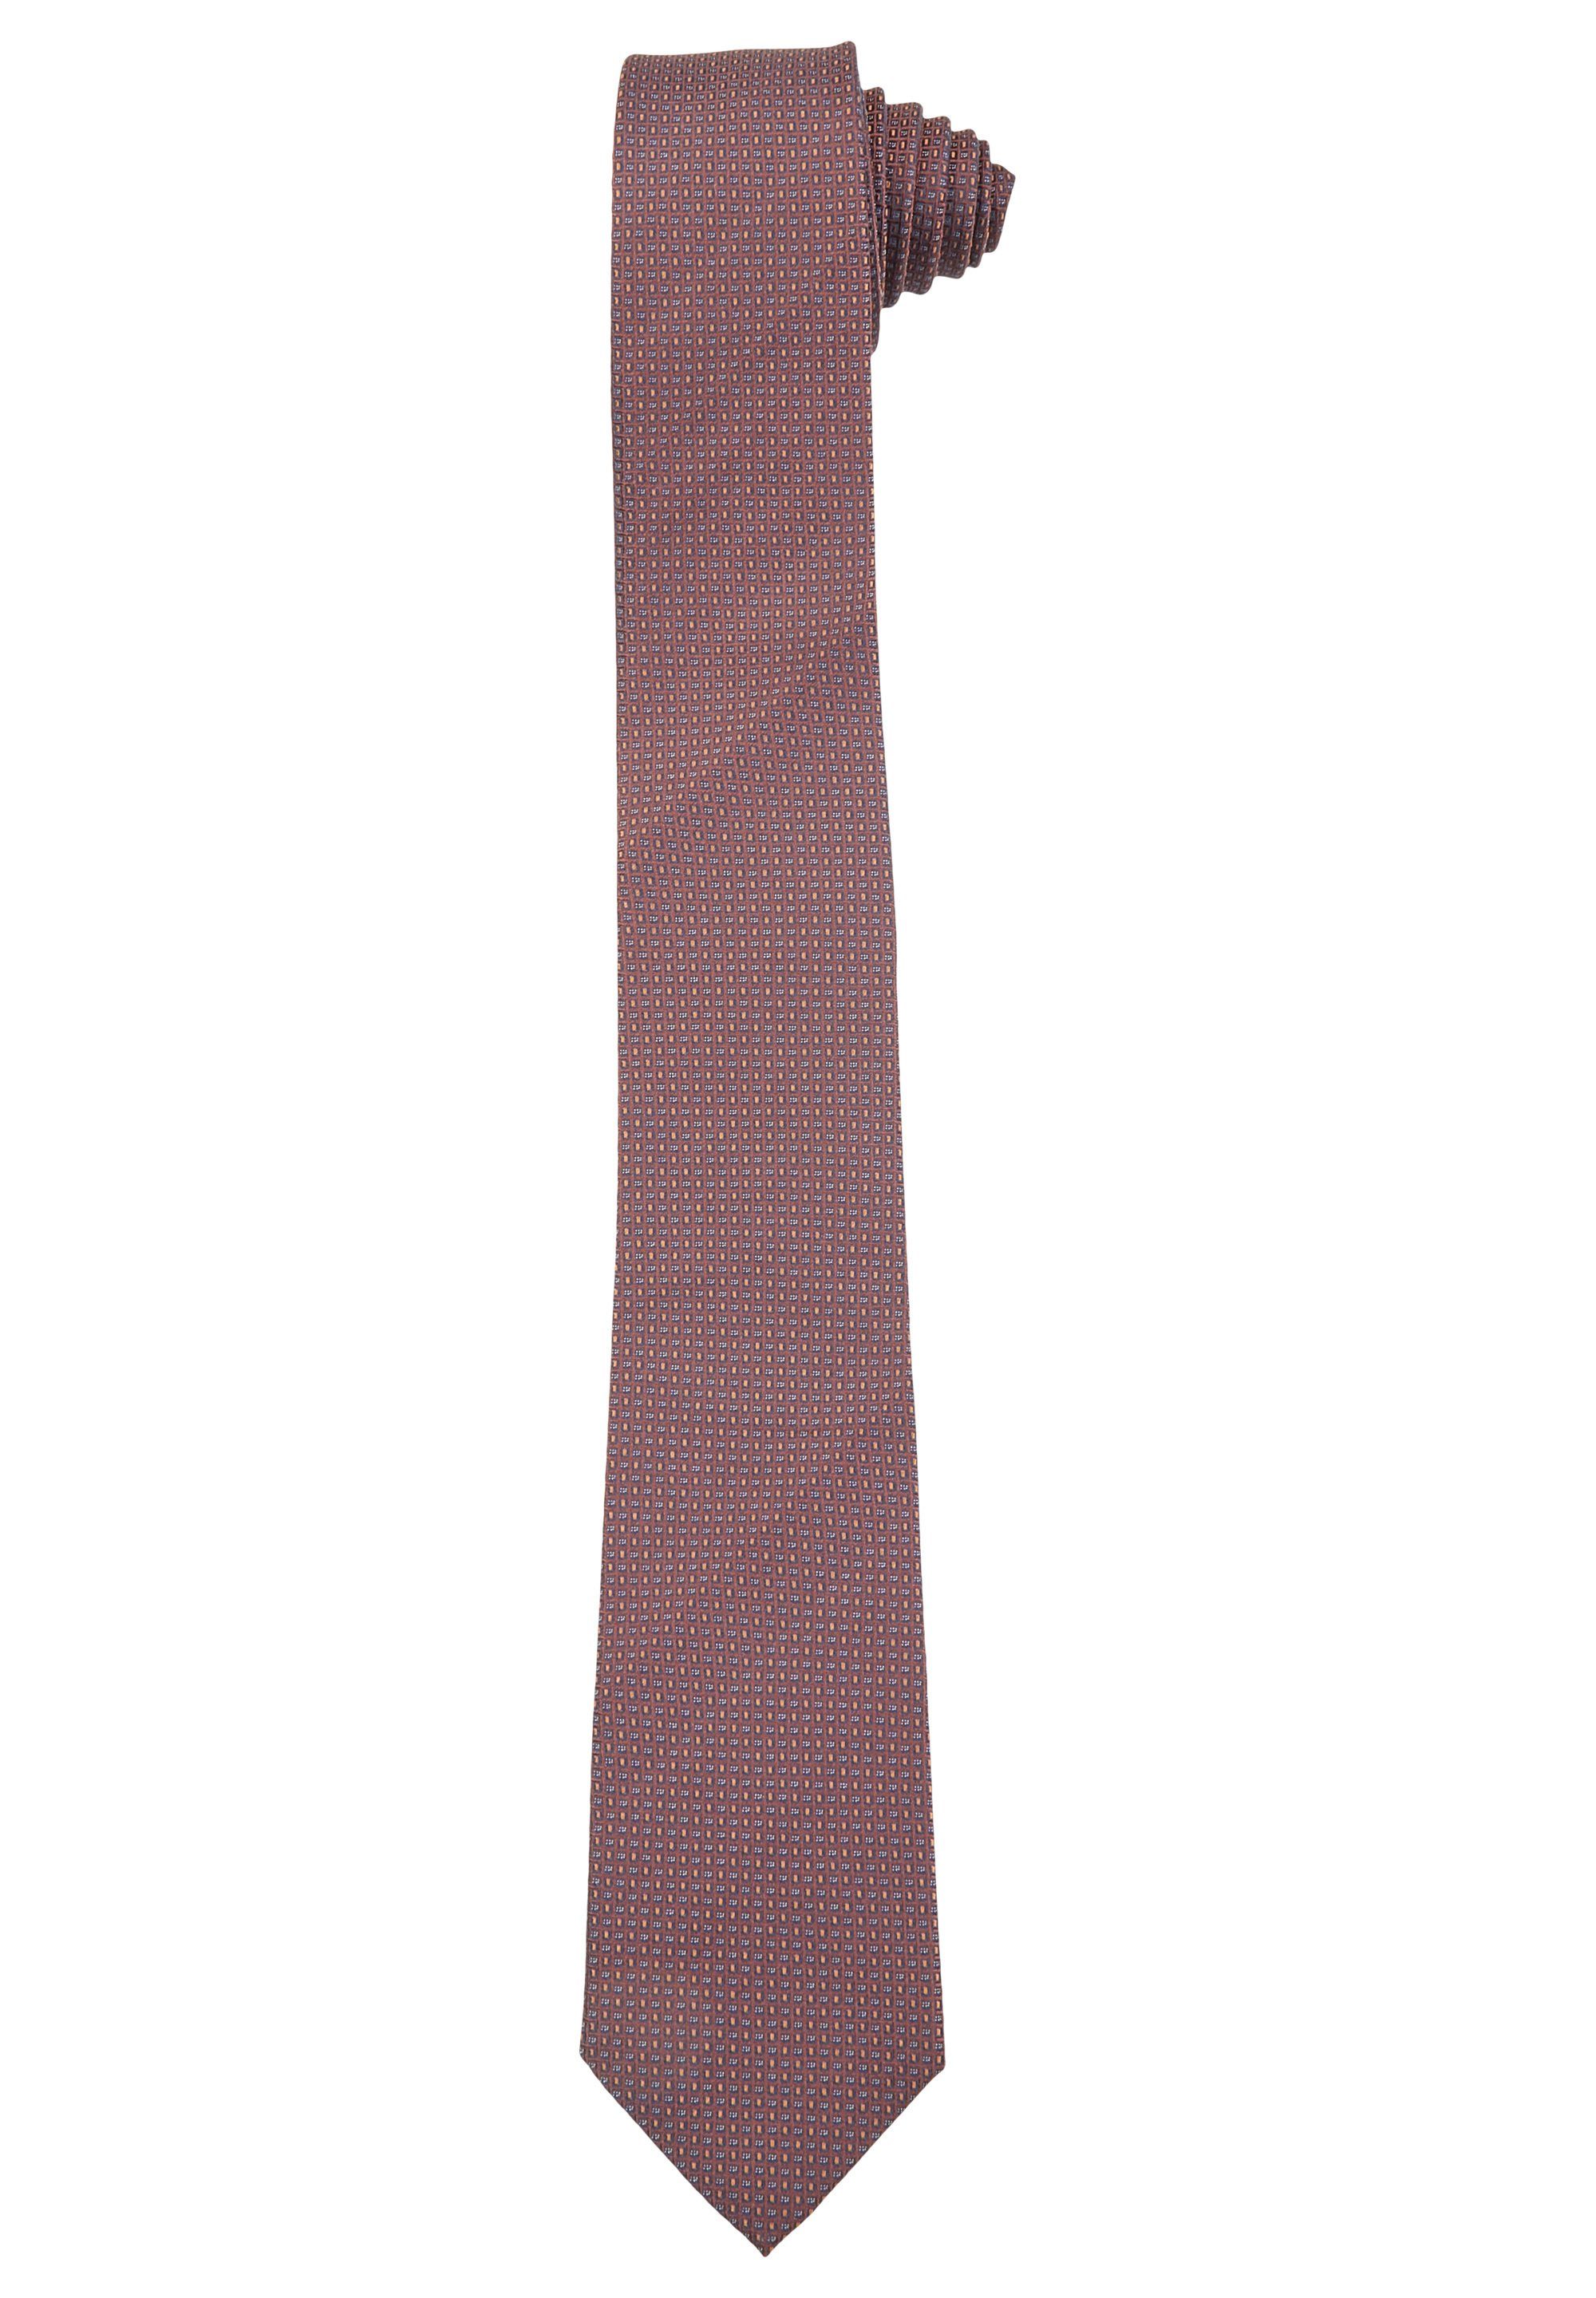 HECHTER PARIS Krawatte aus feinster Seide hazelnut